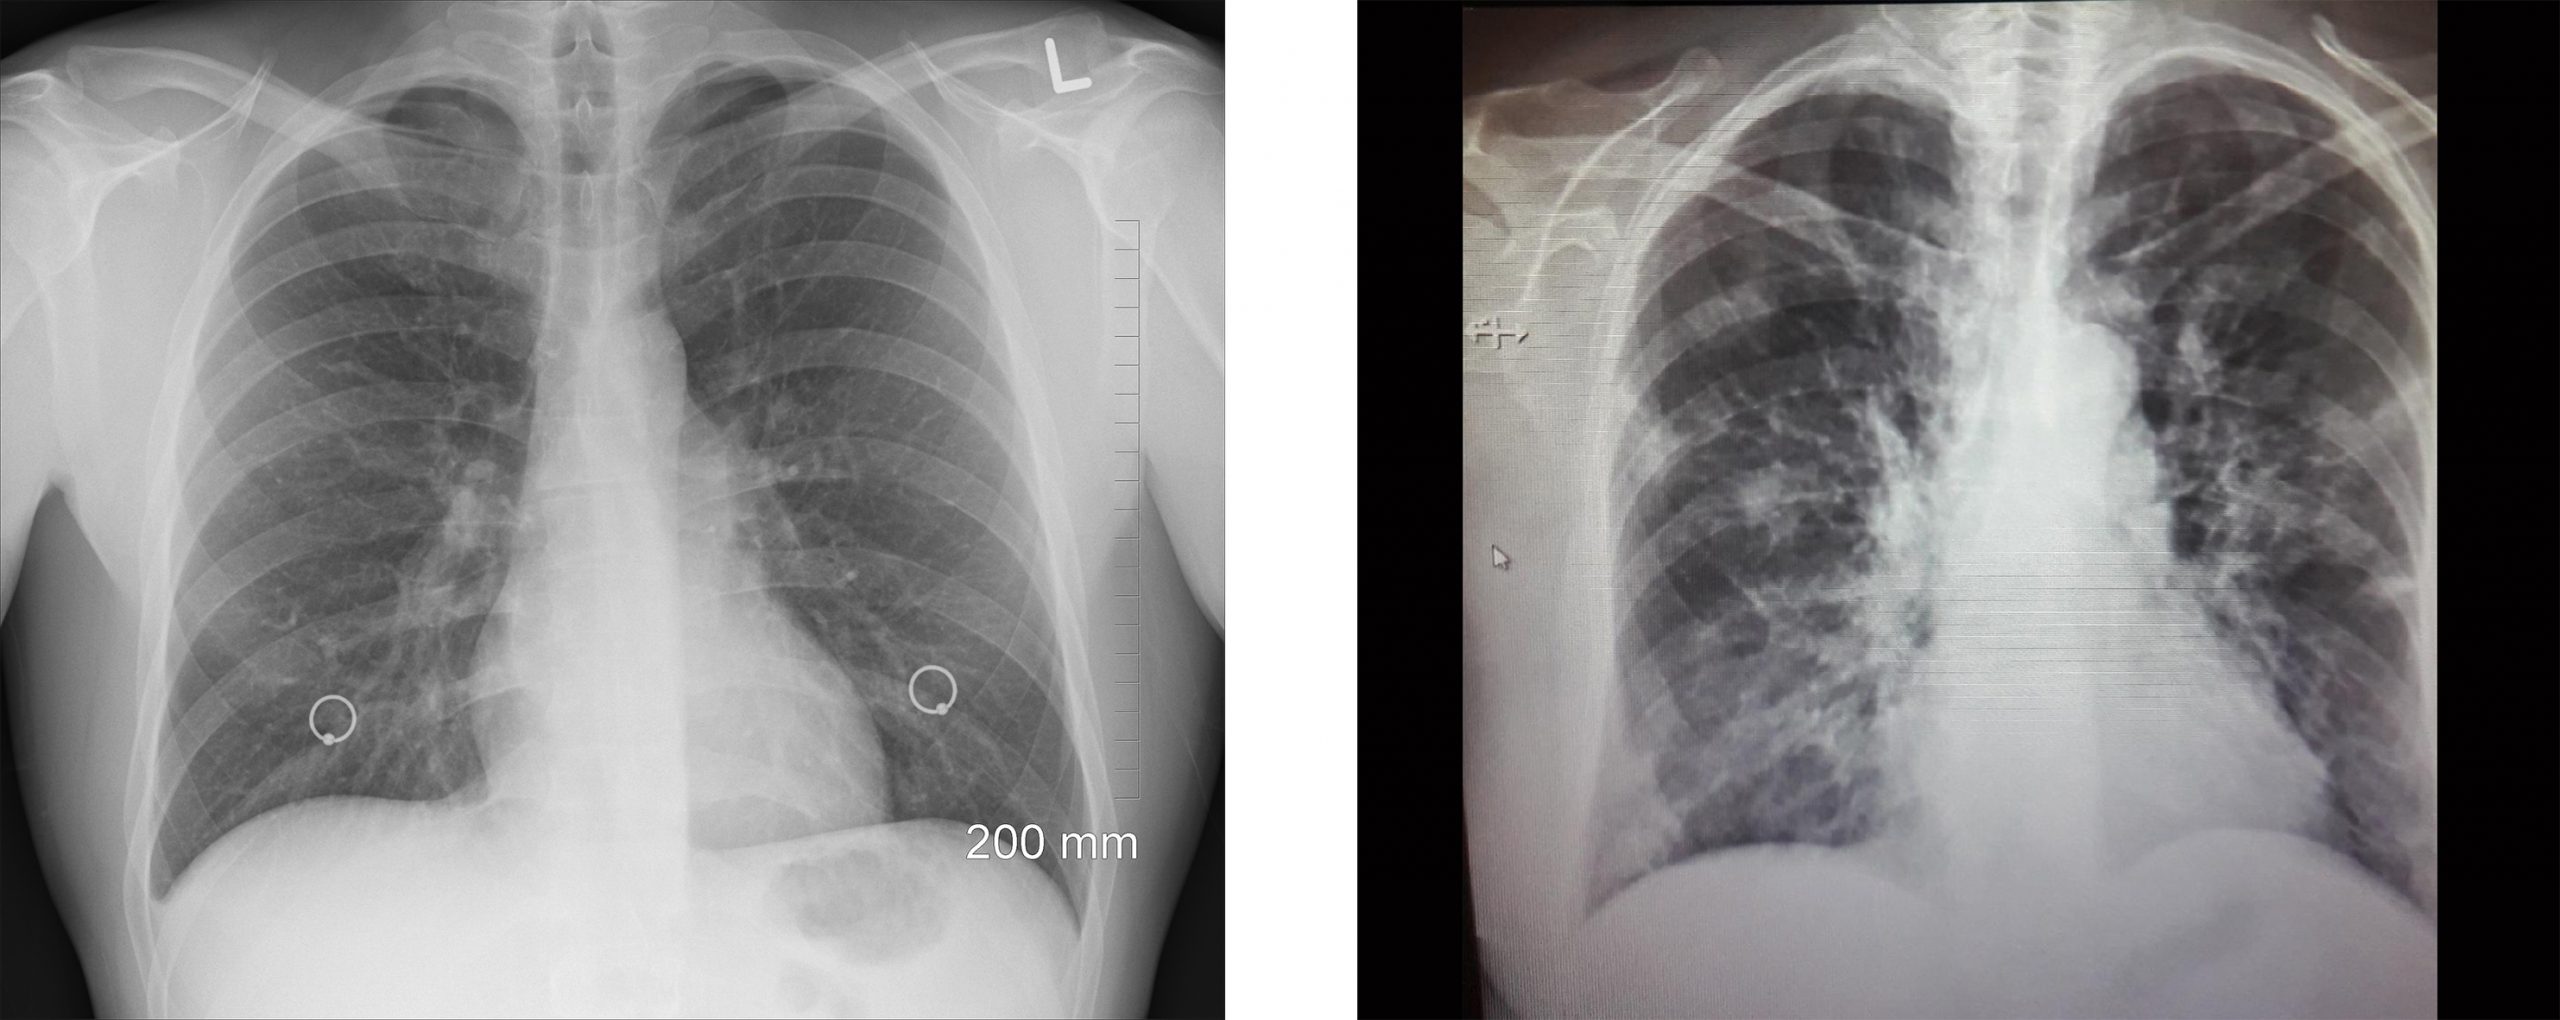 Pľúca zdravého pacienta vs. pľúca covid pacienta